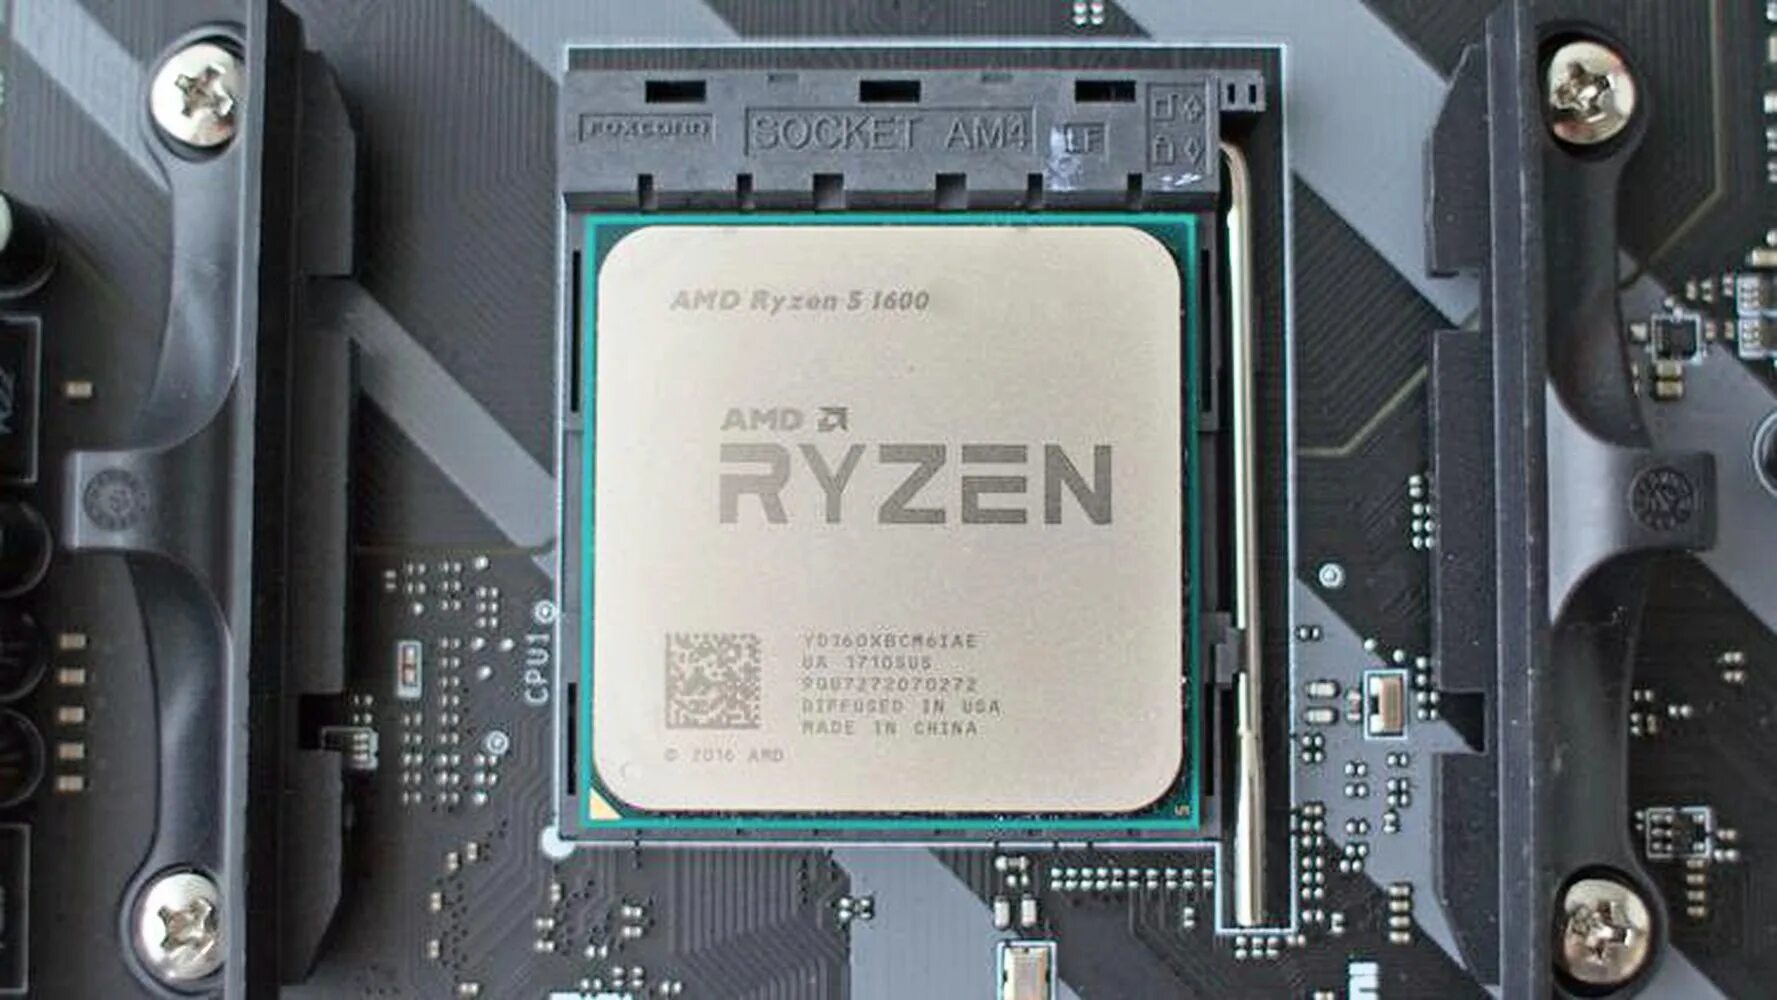 5 1600 купить. AMD Ryzen 5 1600. Ryzen 7 1600. Процессор райзен 5 1600. AMD Ryzen 5 1600 (Box).